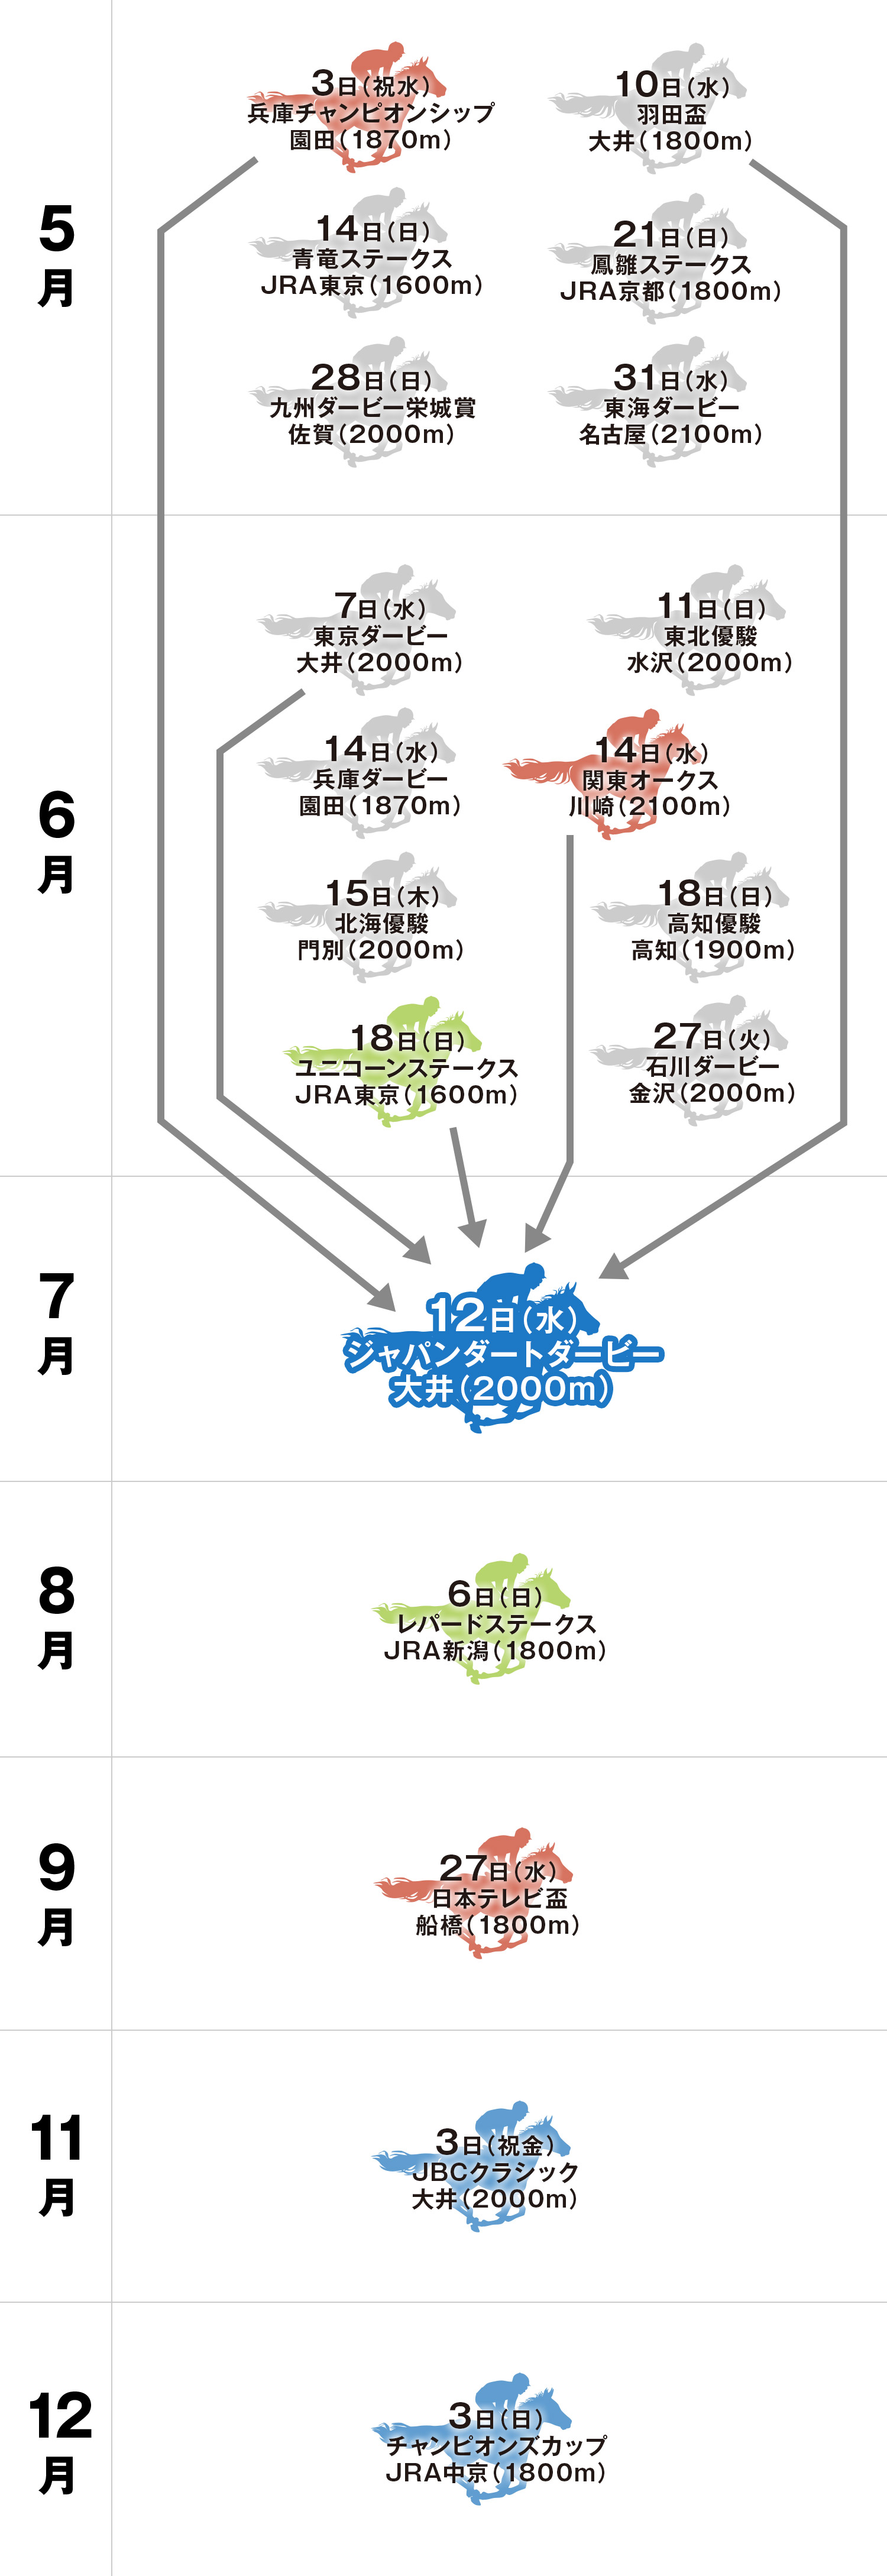 ジャパンダートダービー 体系図